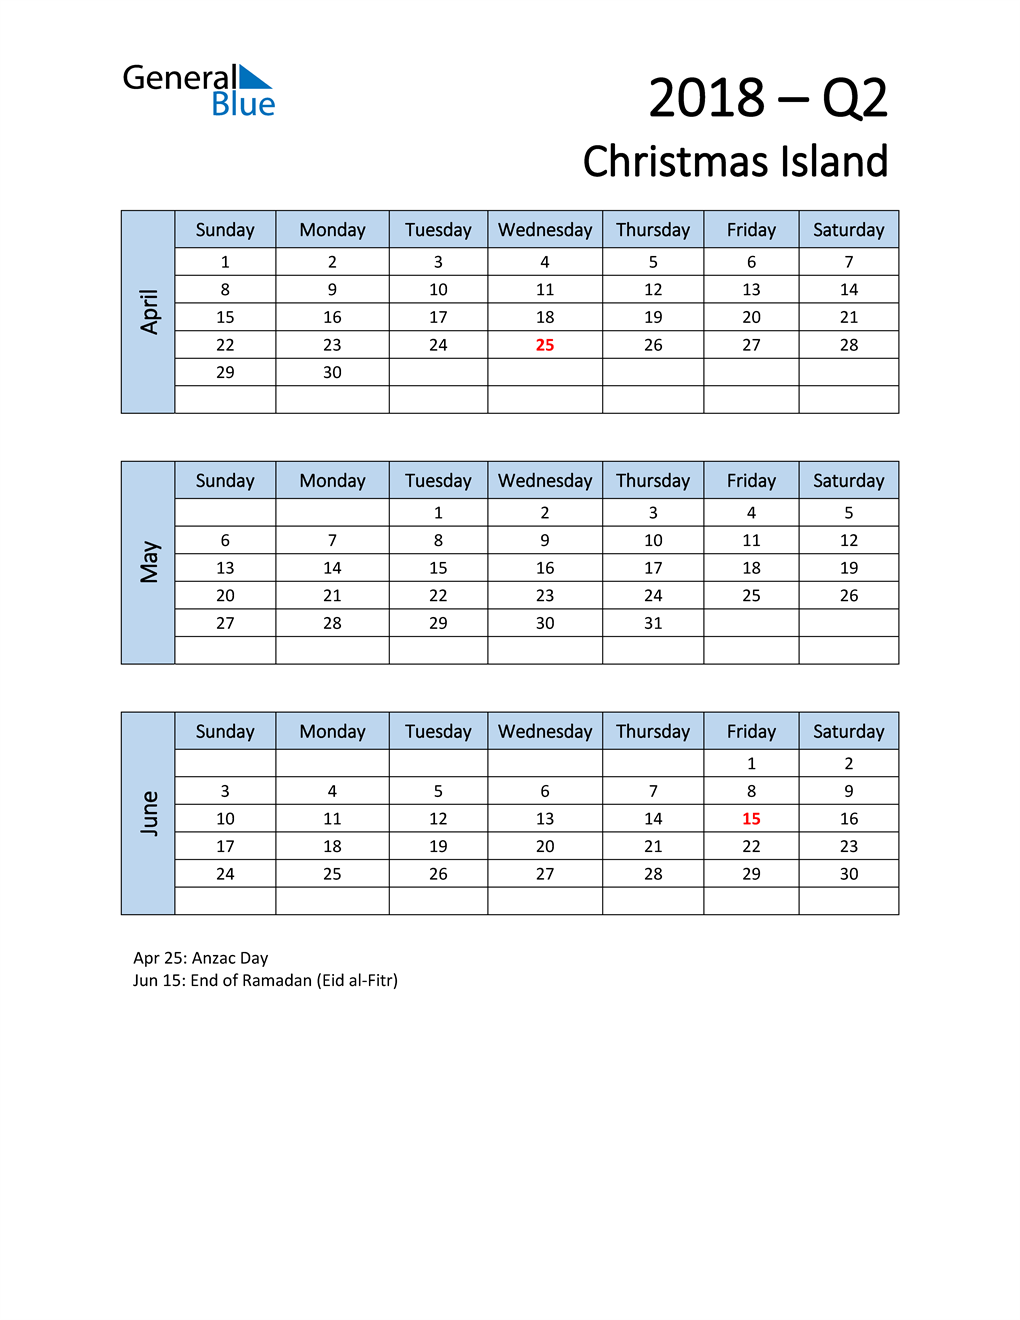  Free Q2 2018 Calendar for Christmas Island